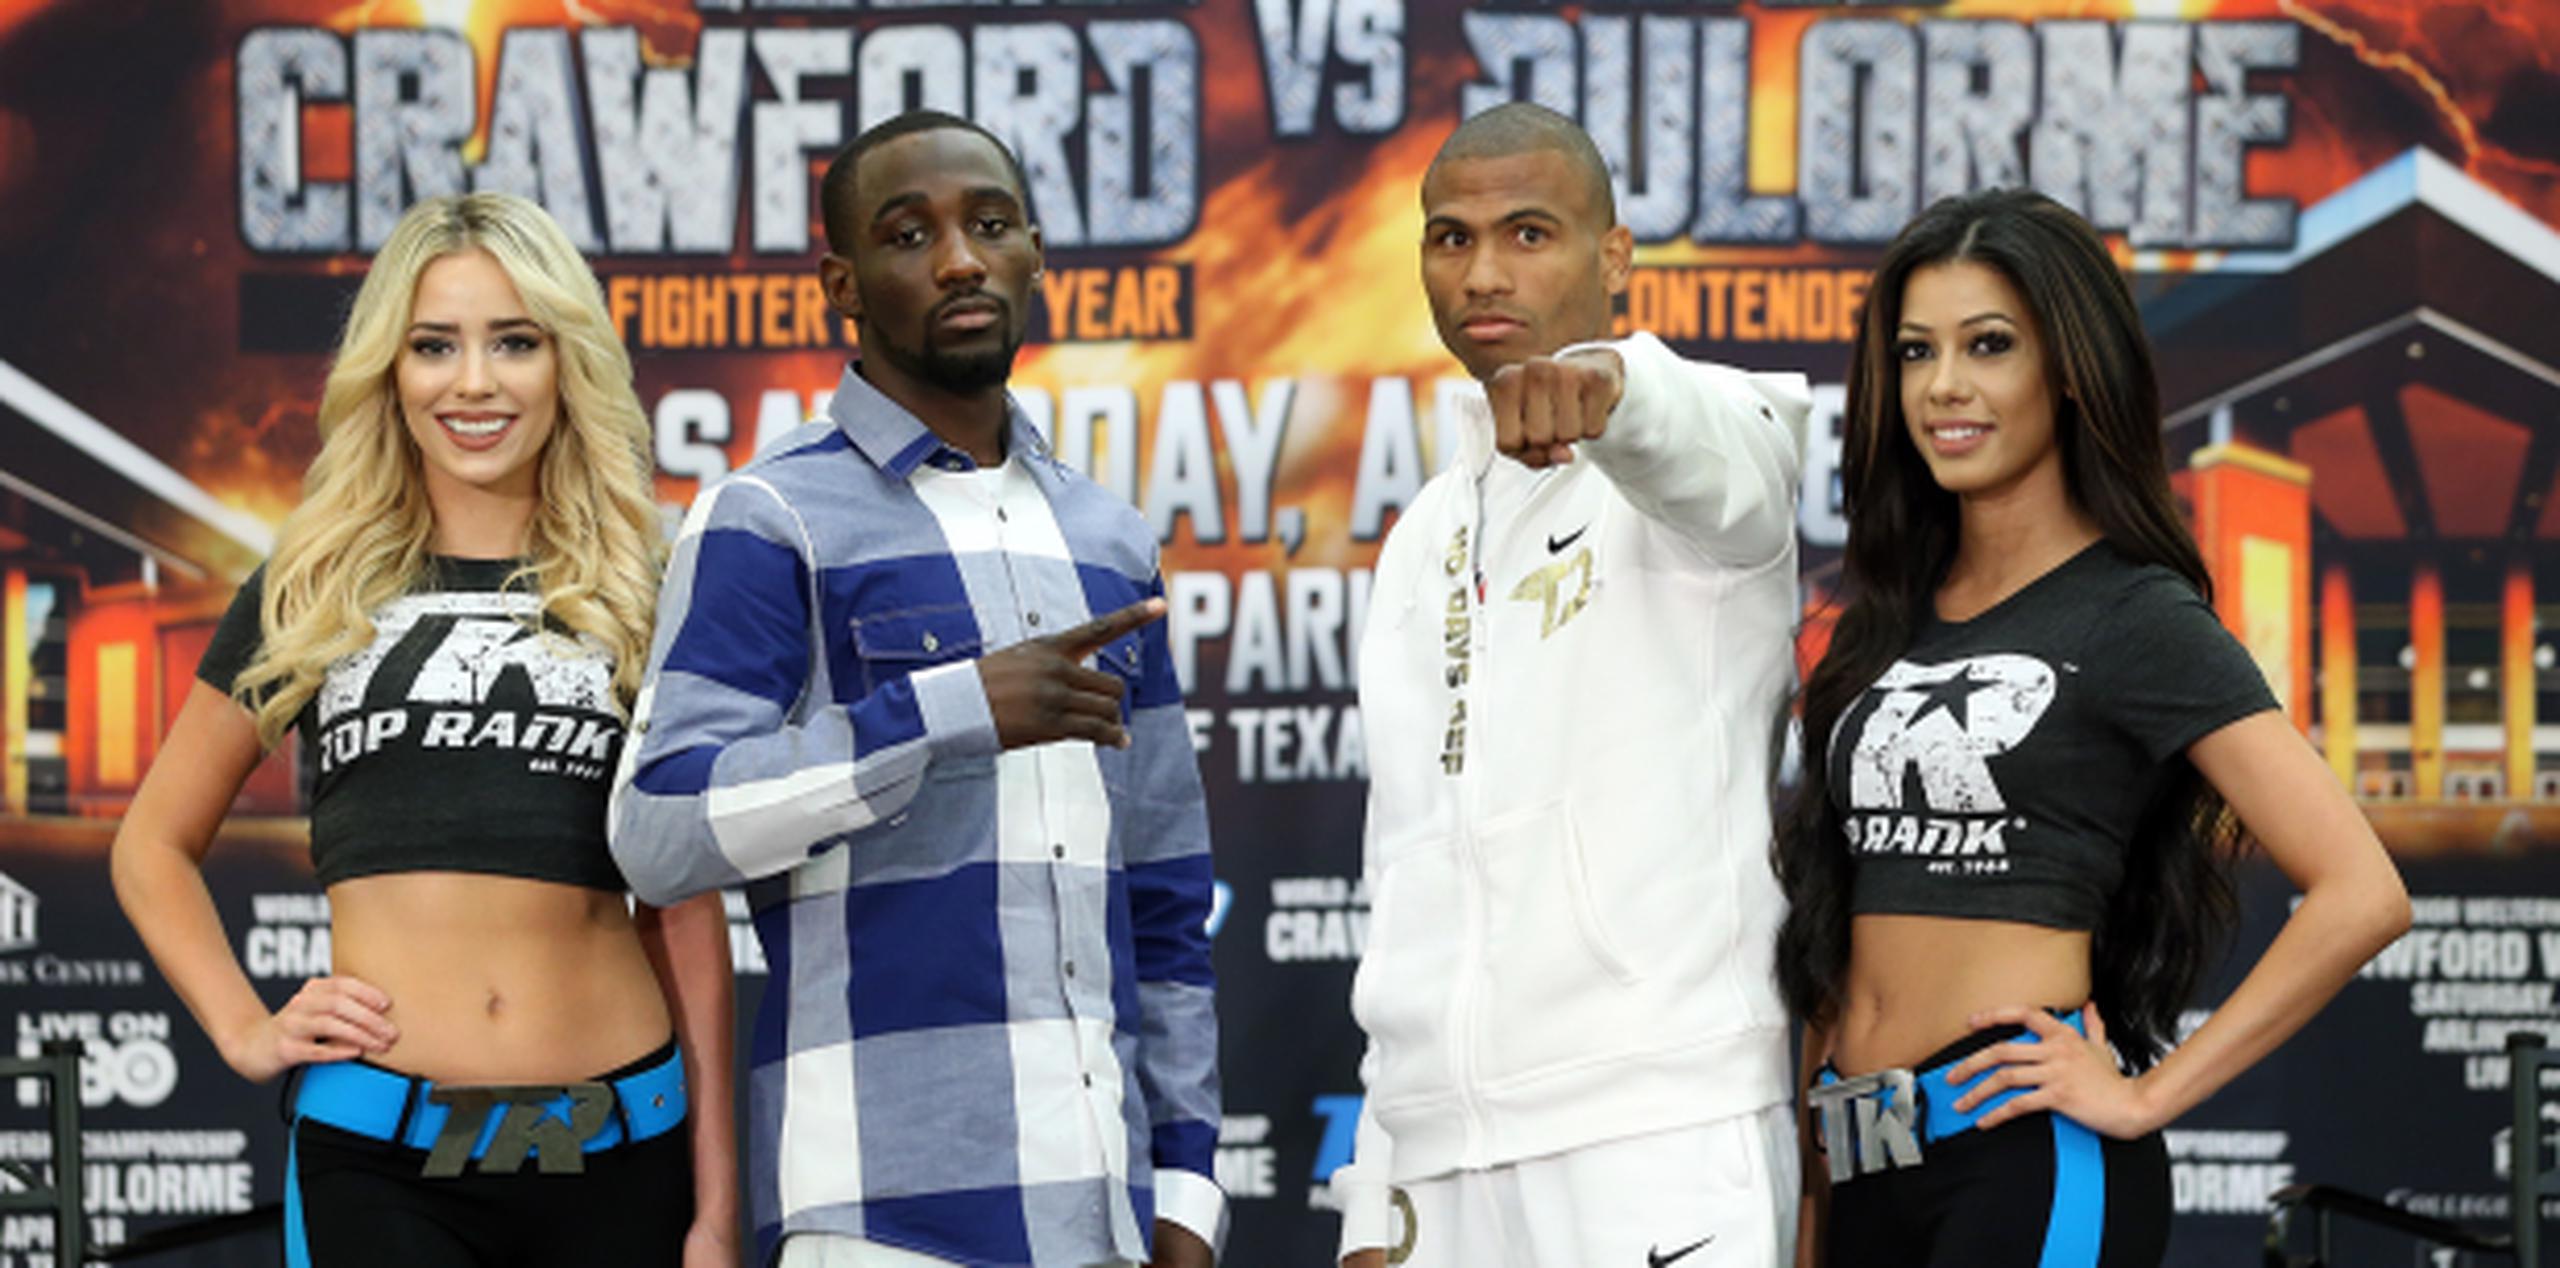 La pelea de este sábado será televisada en una doble jornada por HBO en su programa Boxing After Dark desde las 9:45 p.m. (Suministrada)